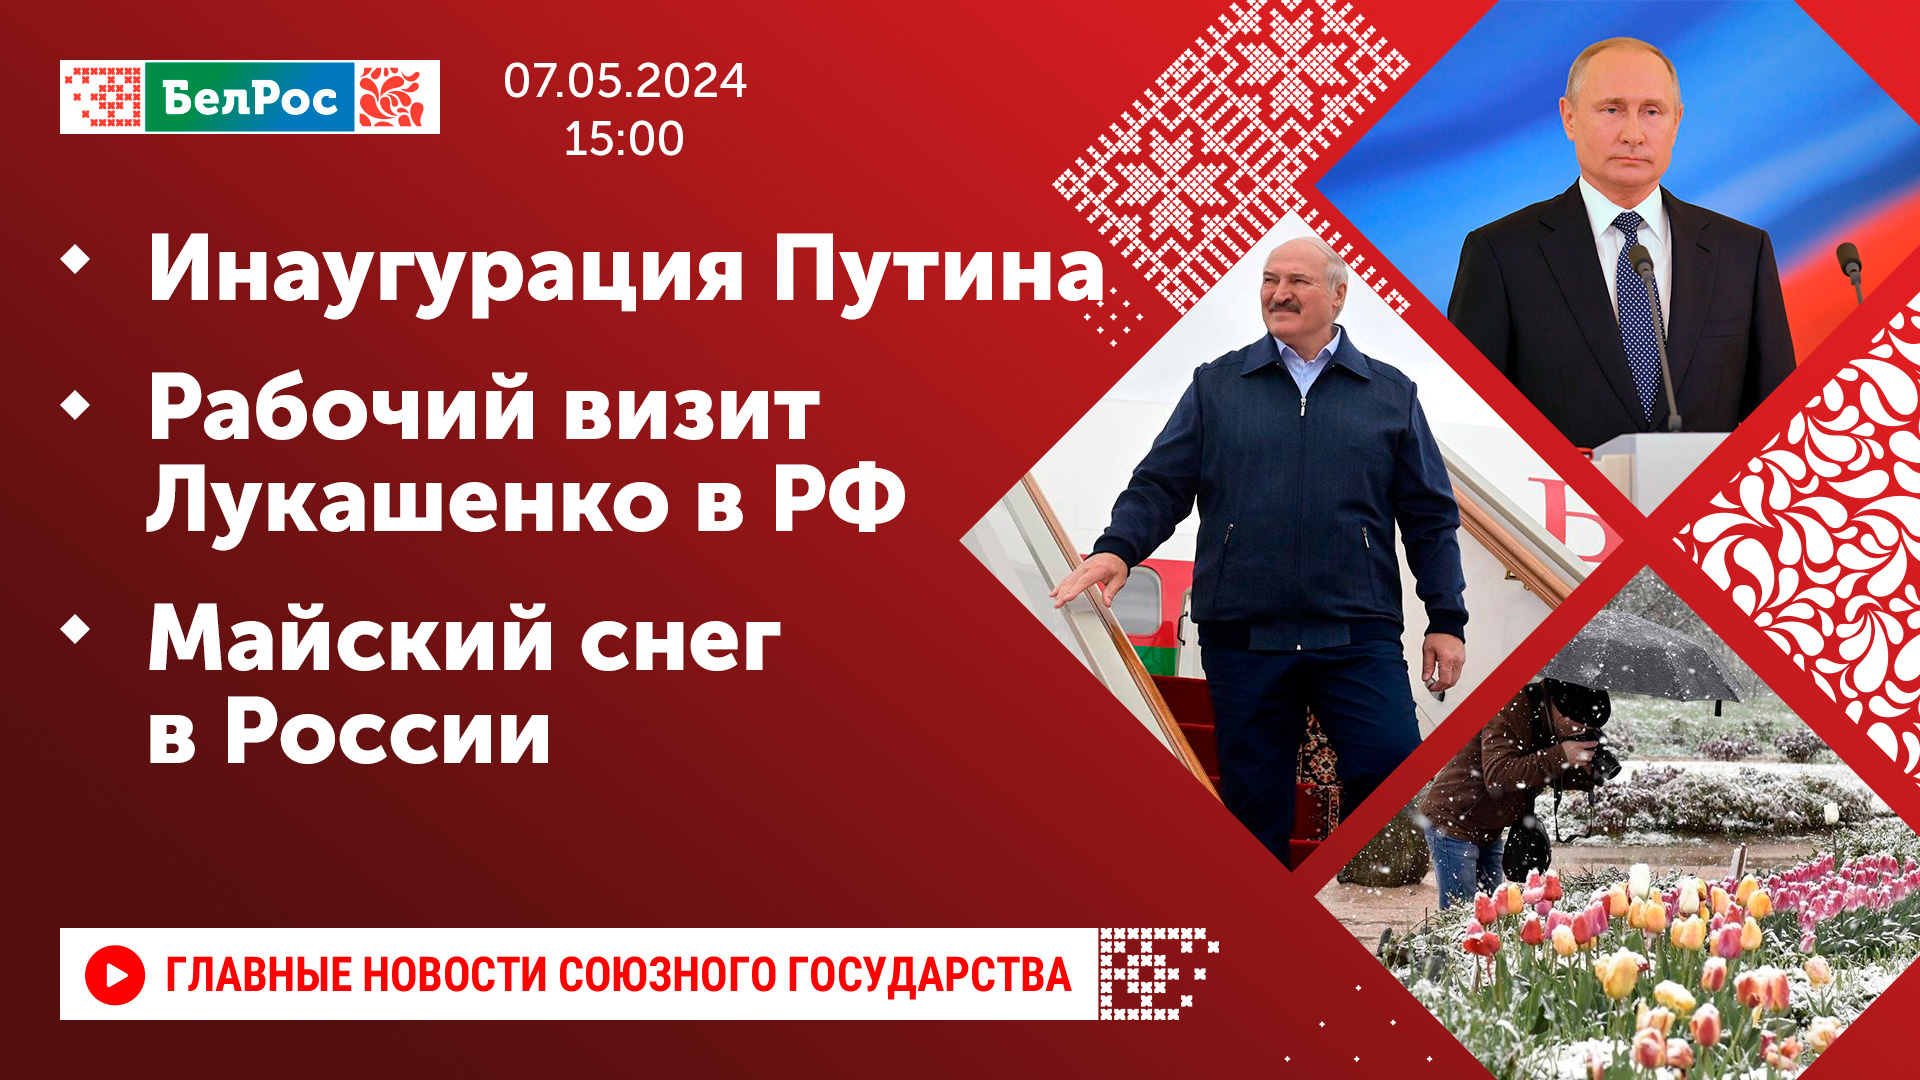 Инаугурация Путина / Рабочий визит Лукашенко в РФ / Майский снег в России